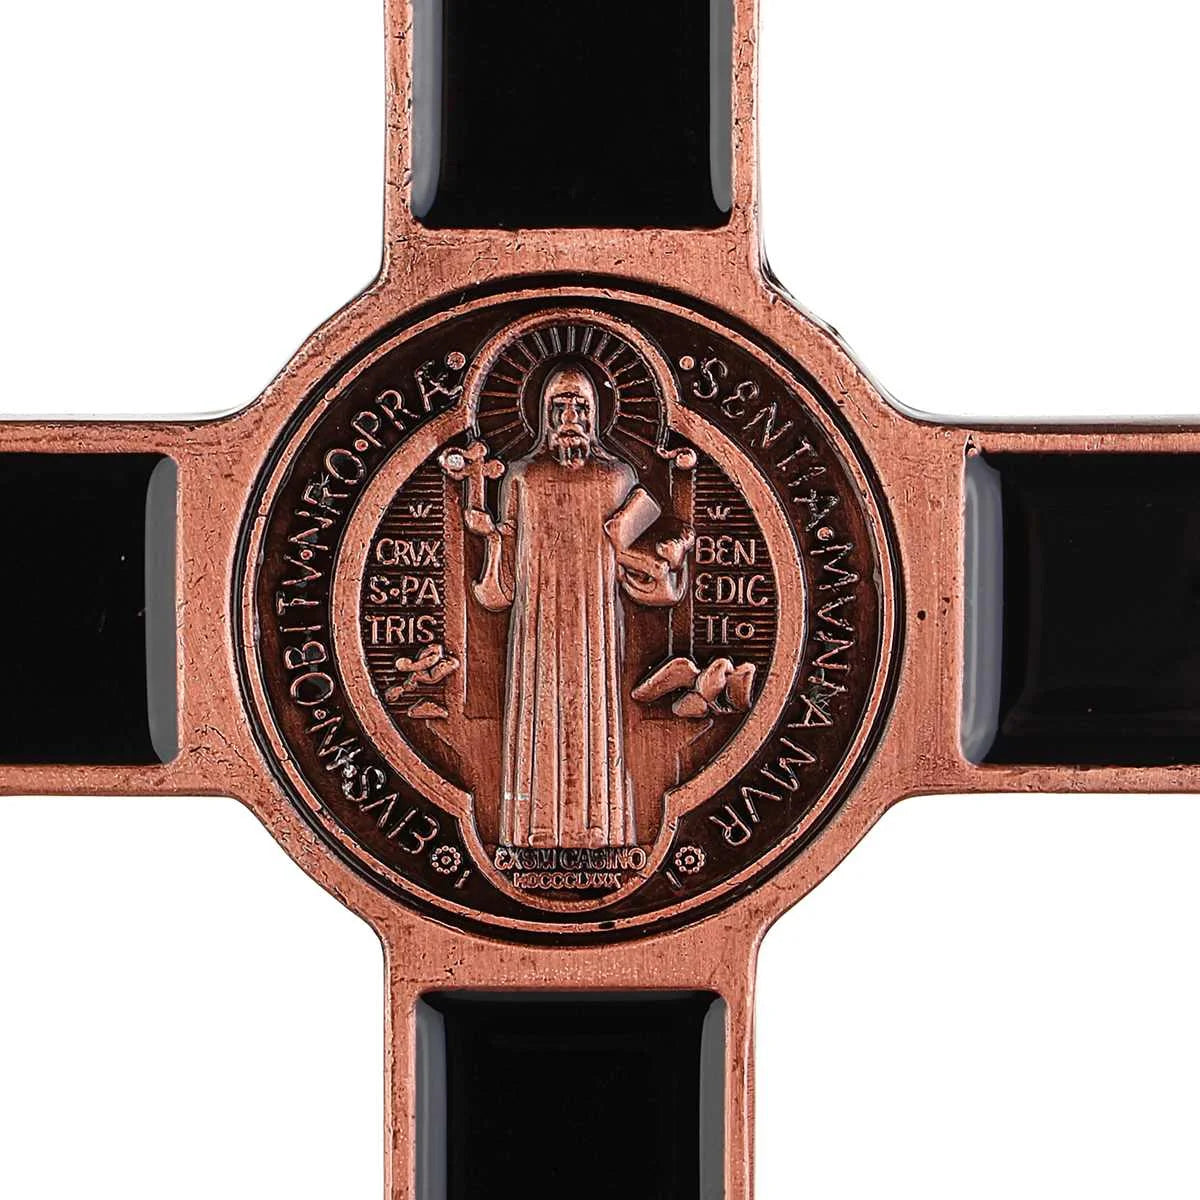 Metallkreuz Jesus zum aufhängen 20 cm